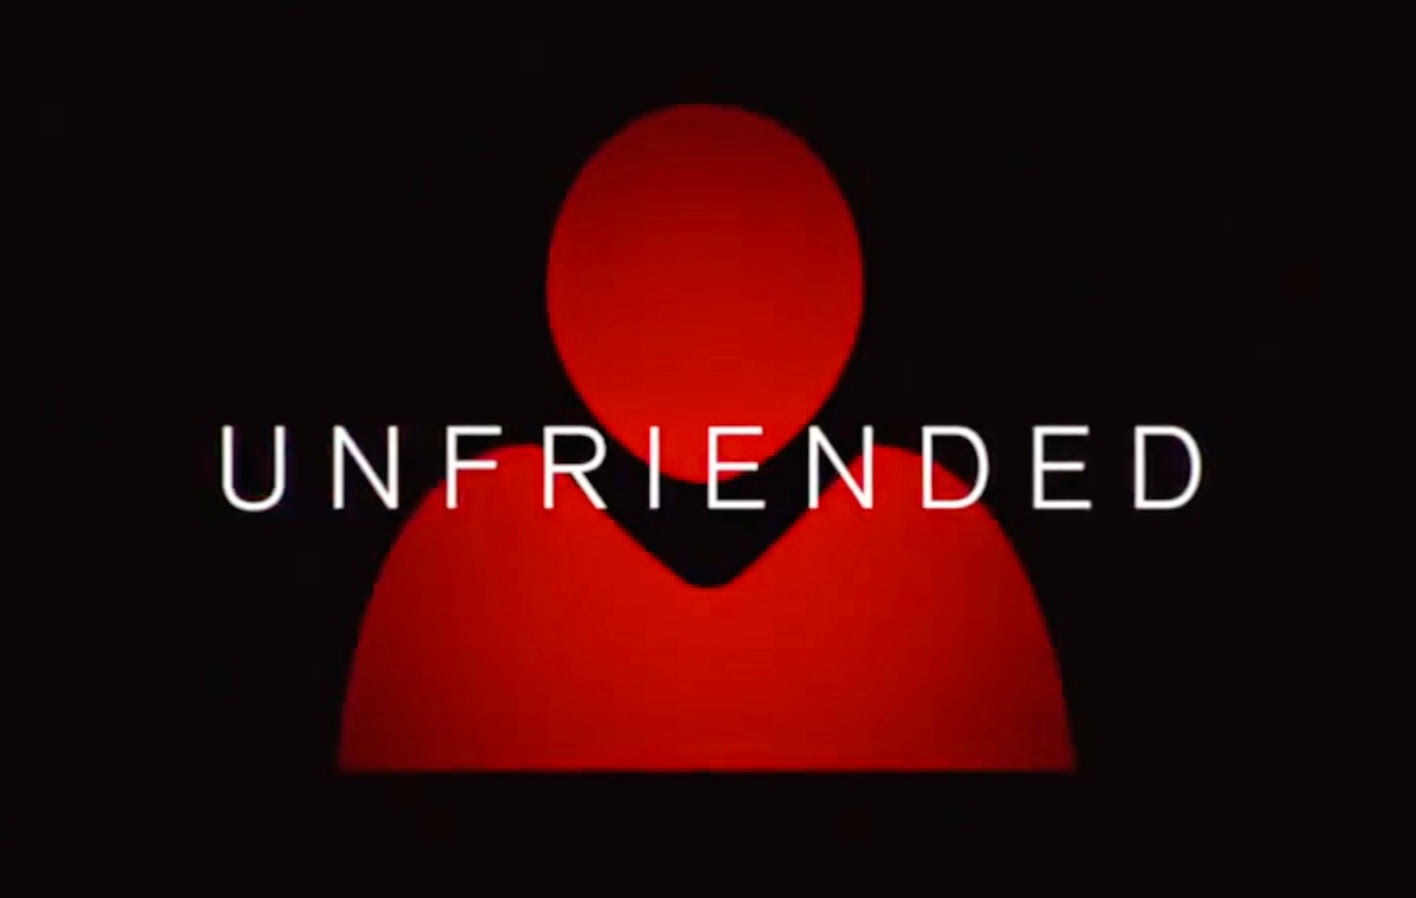 2015 Unfriended